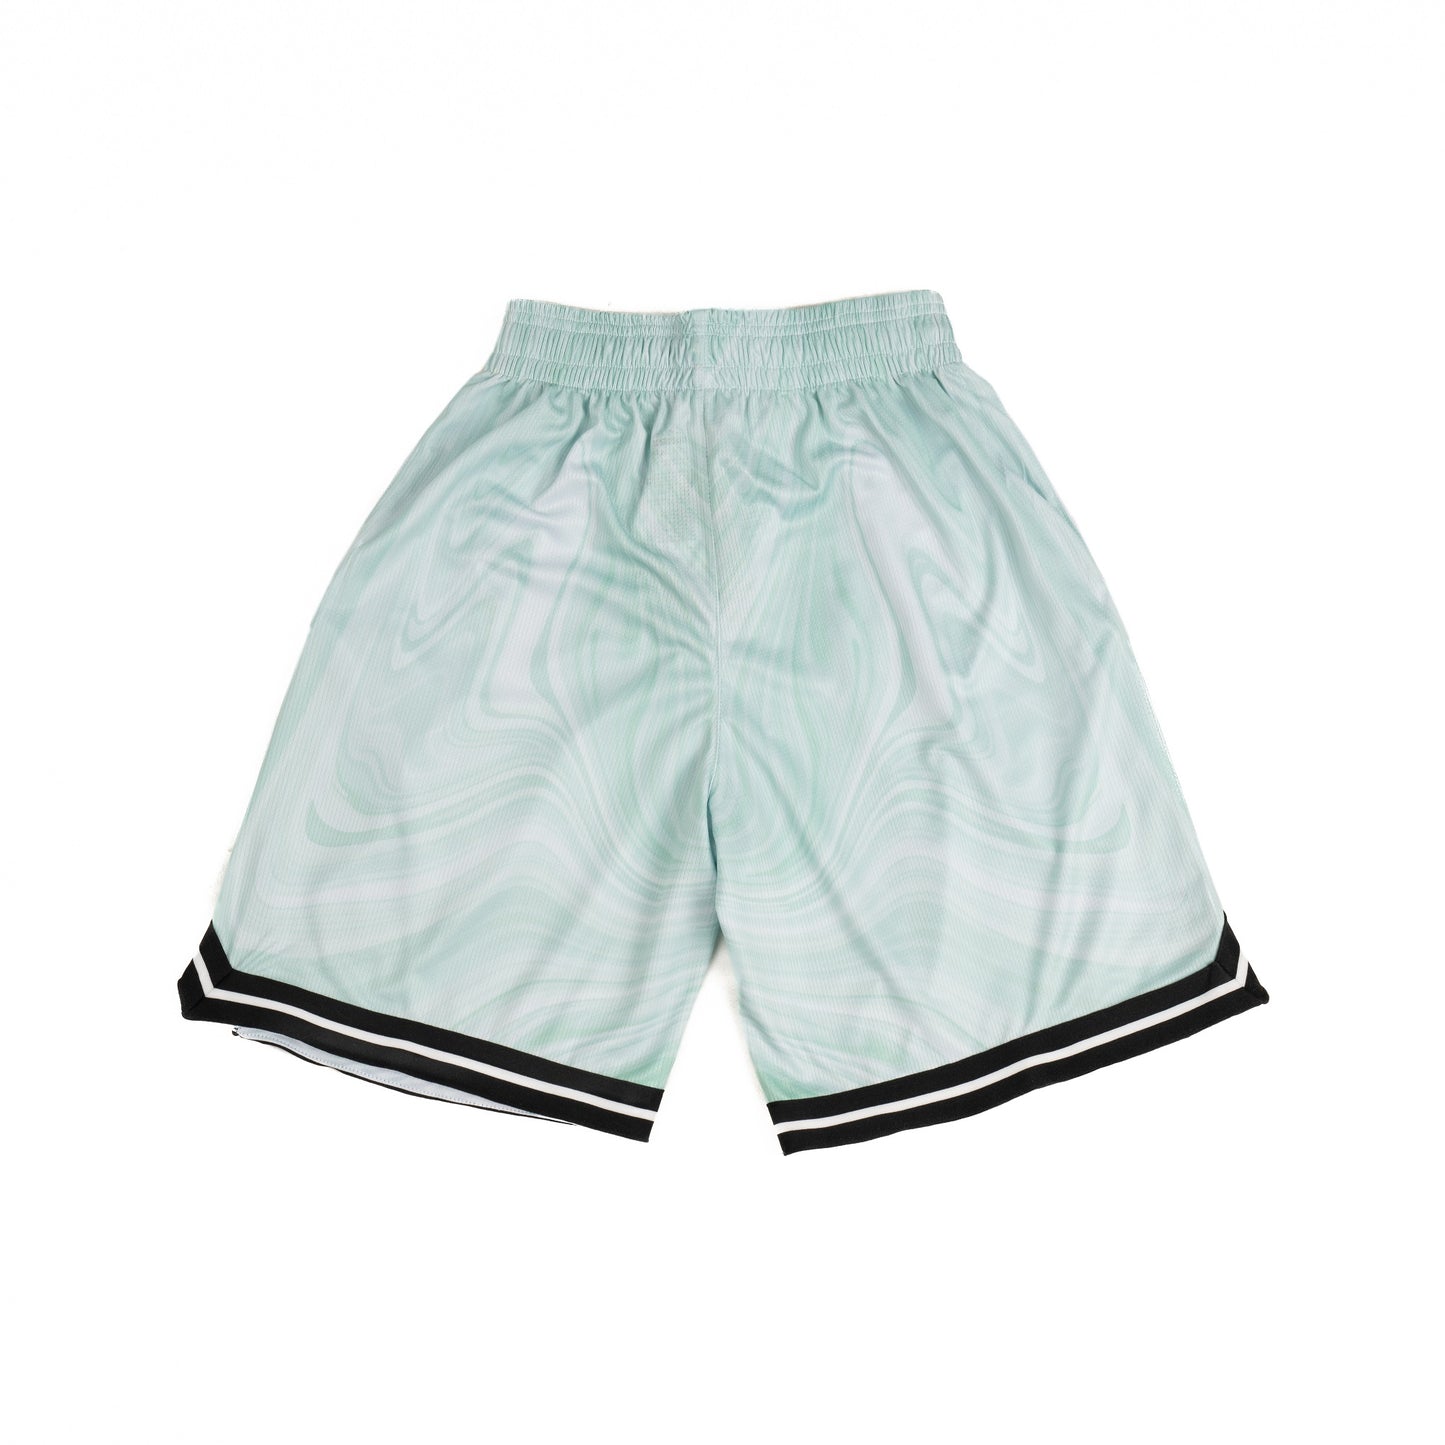 AZA Short Pants Basketball Marble Edition - Green